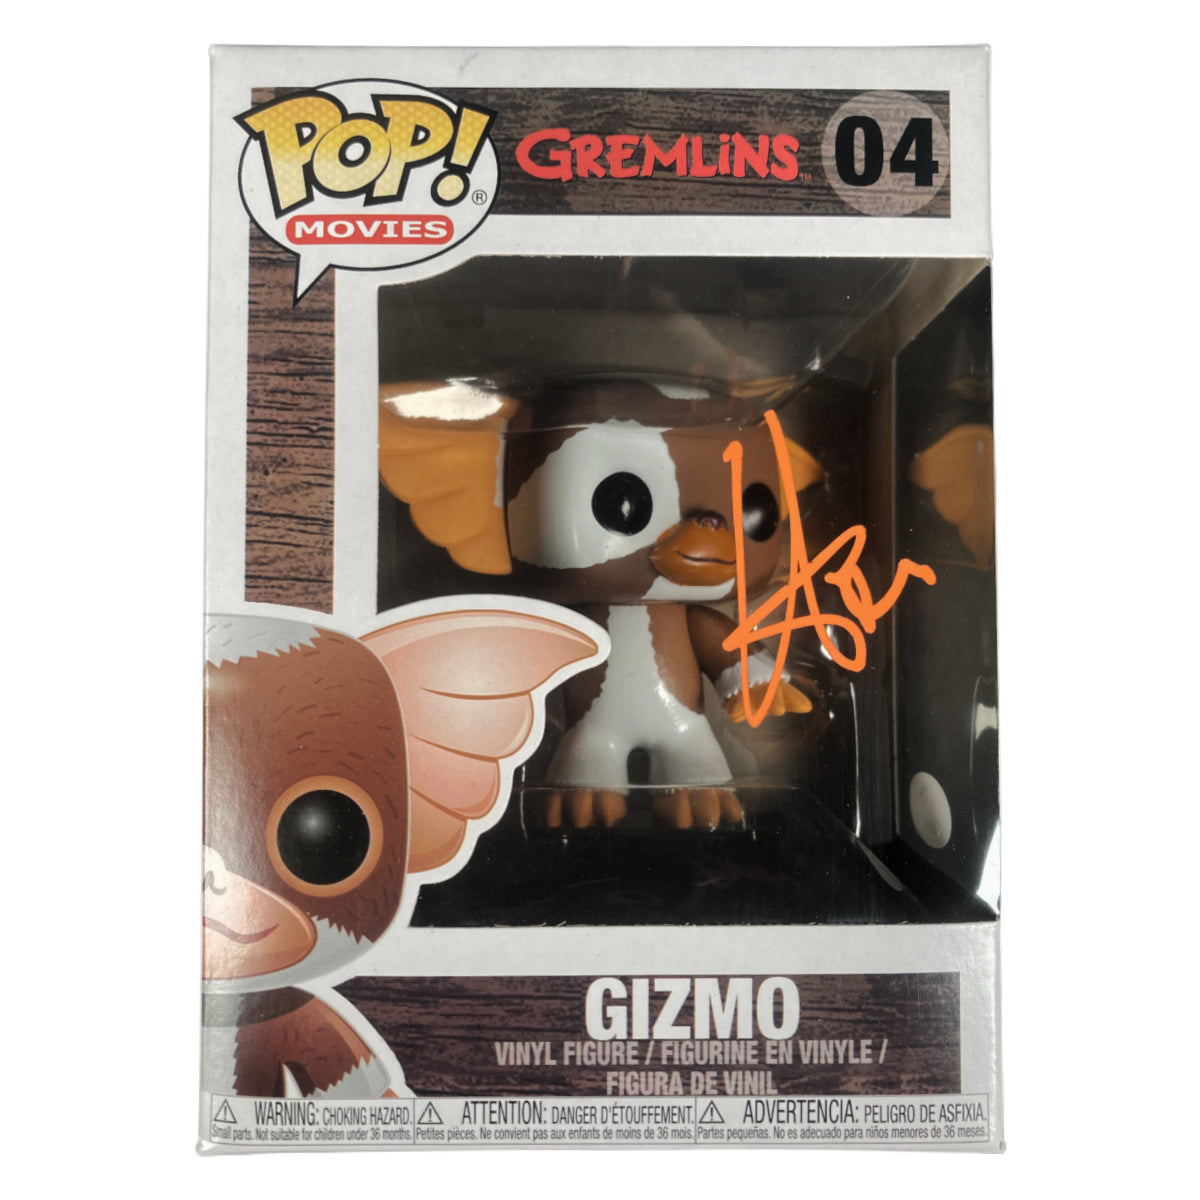 Howie Mandel Signed Funko Pop Gremlins Gizmo #04 Autographed JSA COA